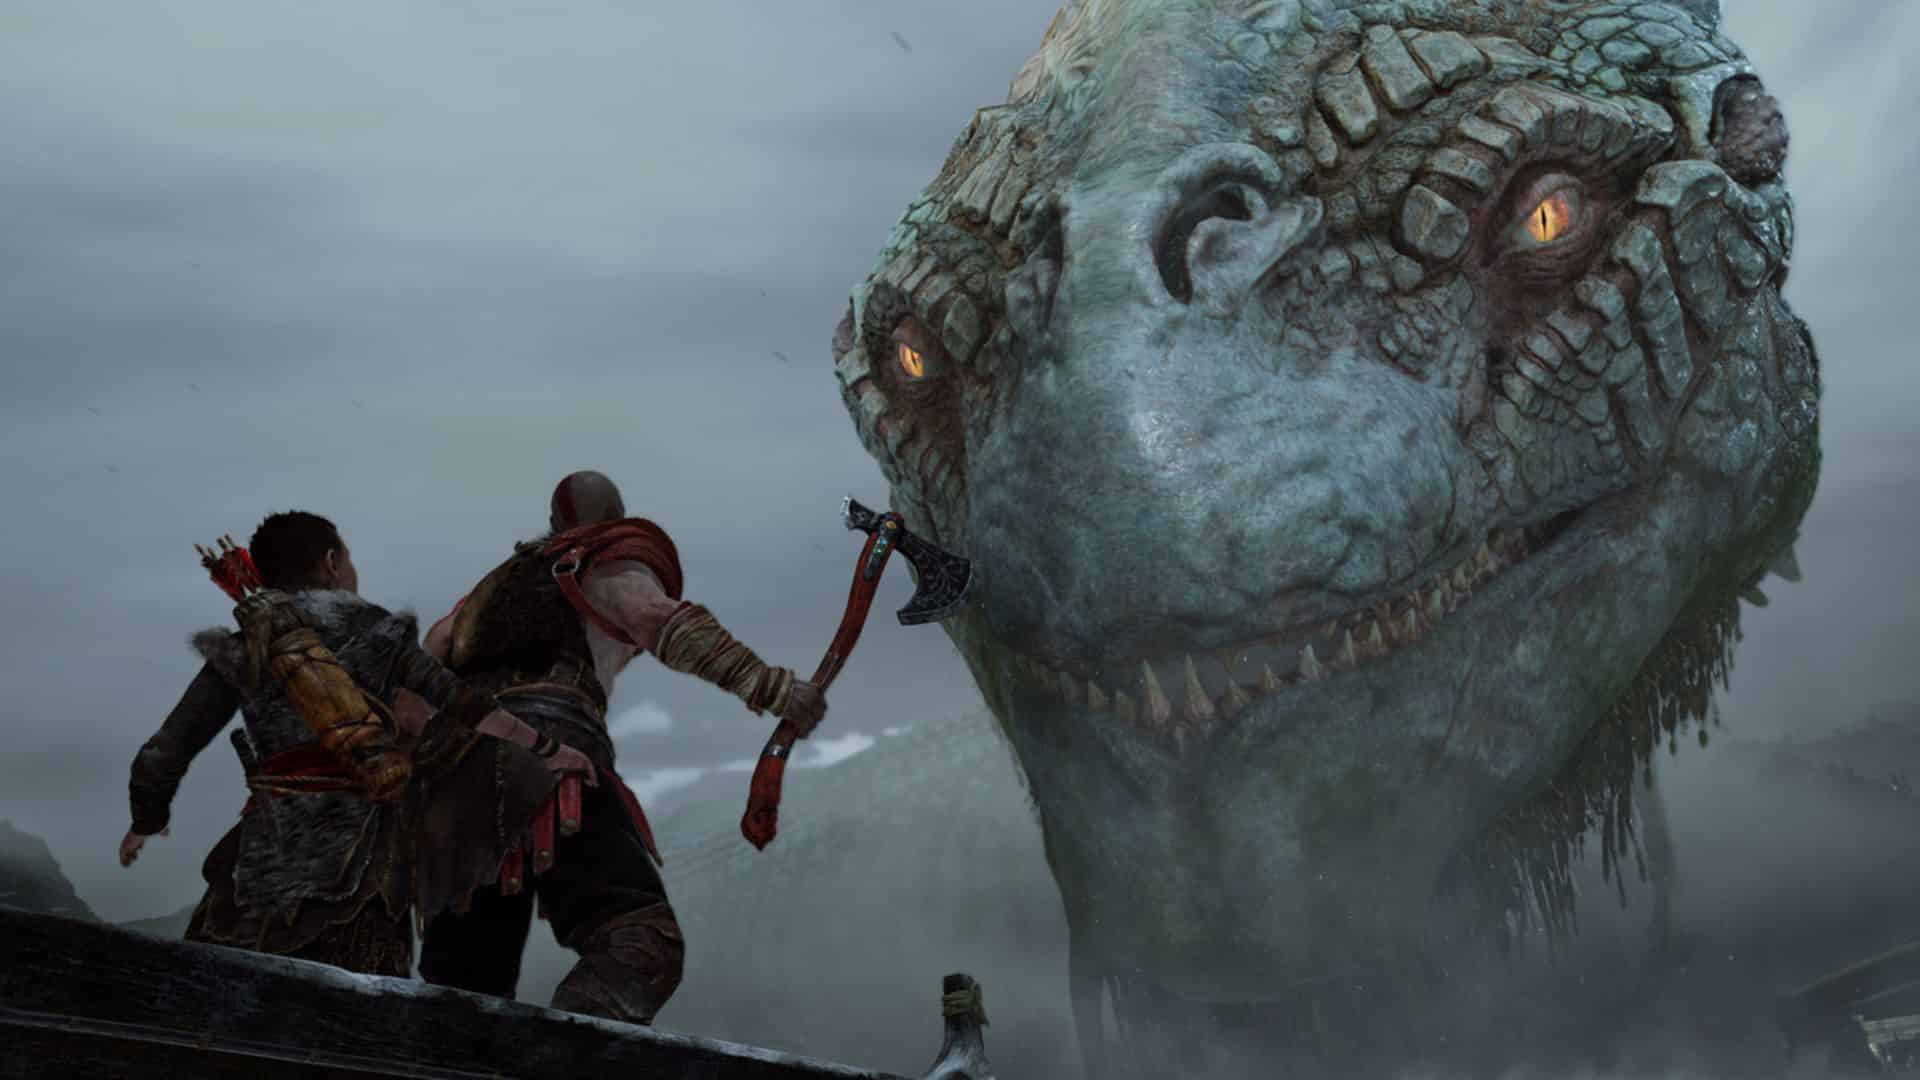 kratos and atreus talking to Jörmungandr